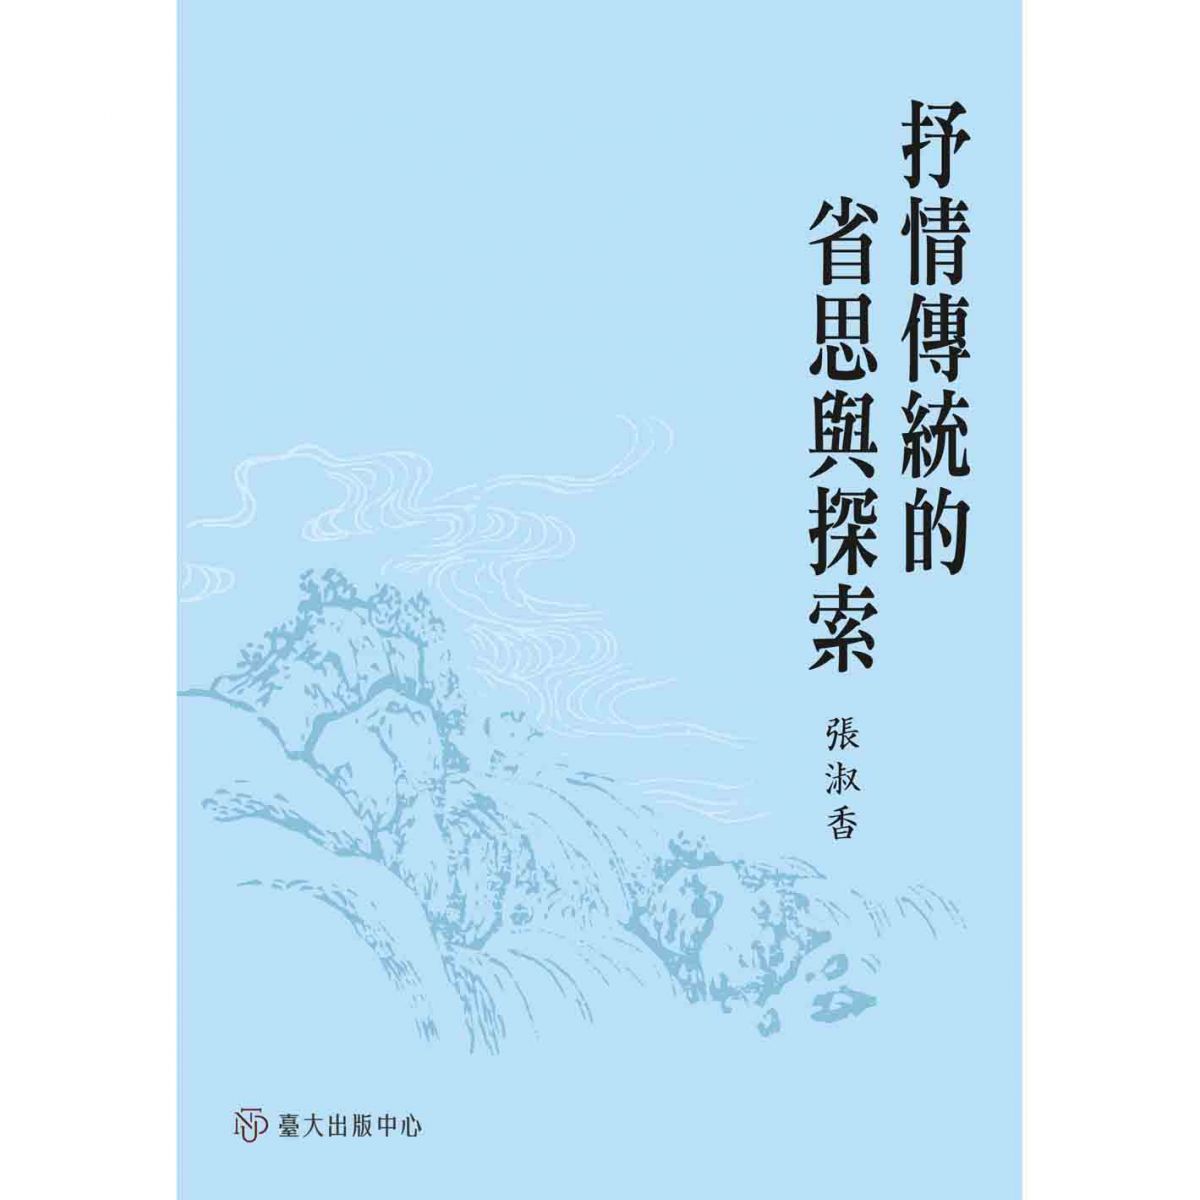 《抒情傳統的省思與探索》開發對於中國文學的另一種理解角度與認識途徑